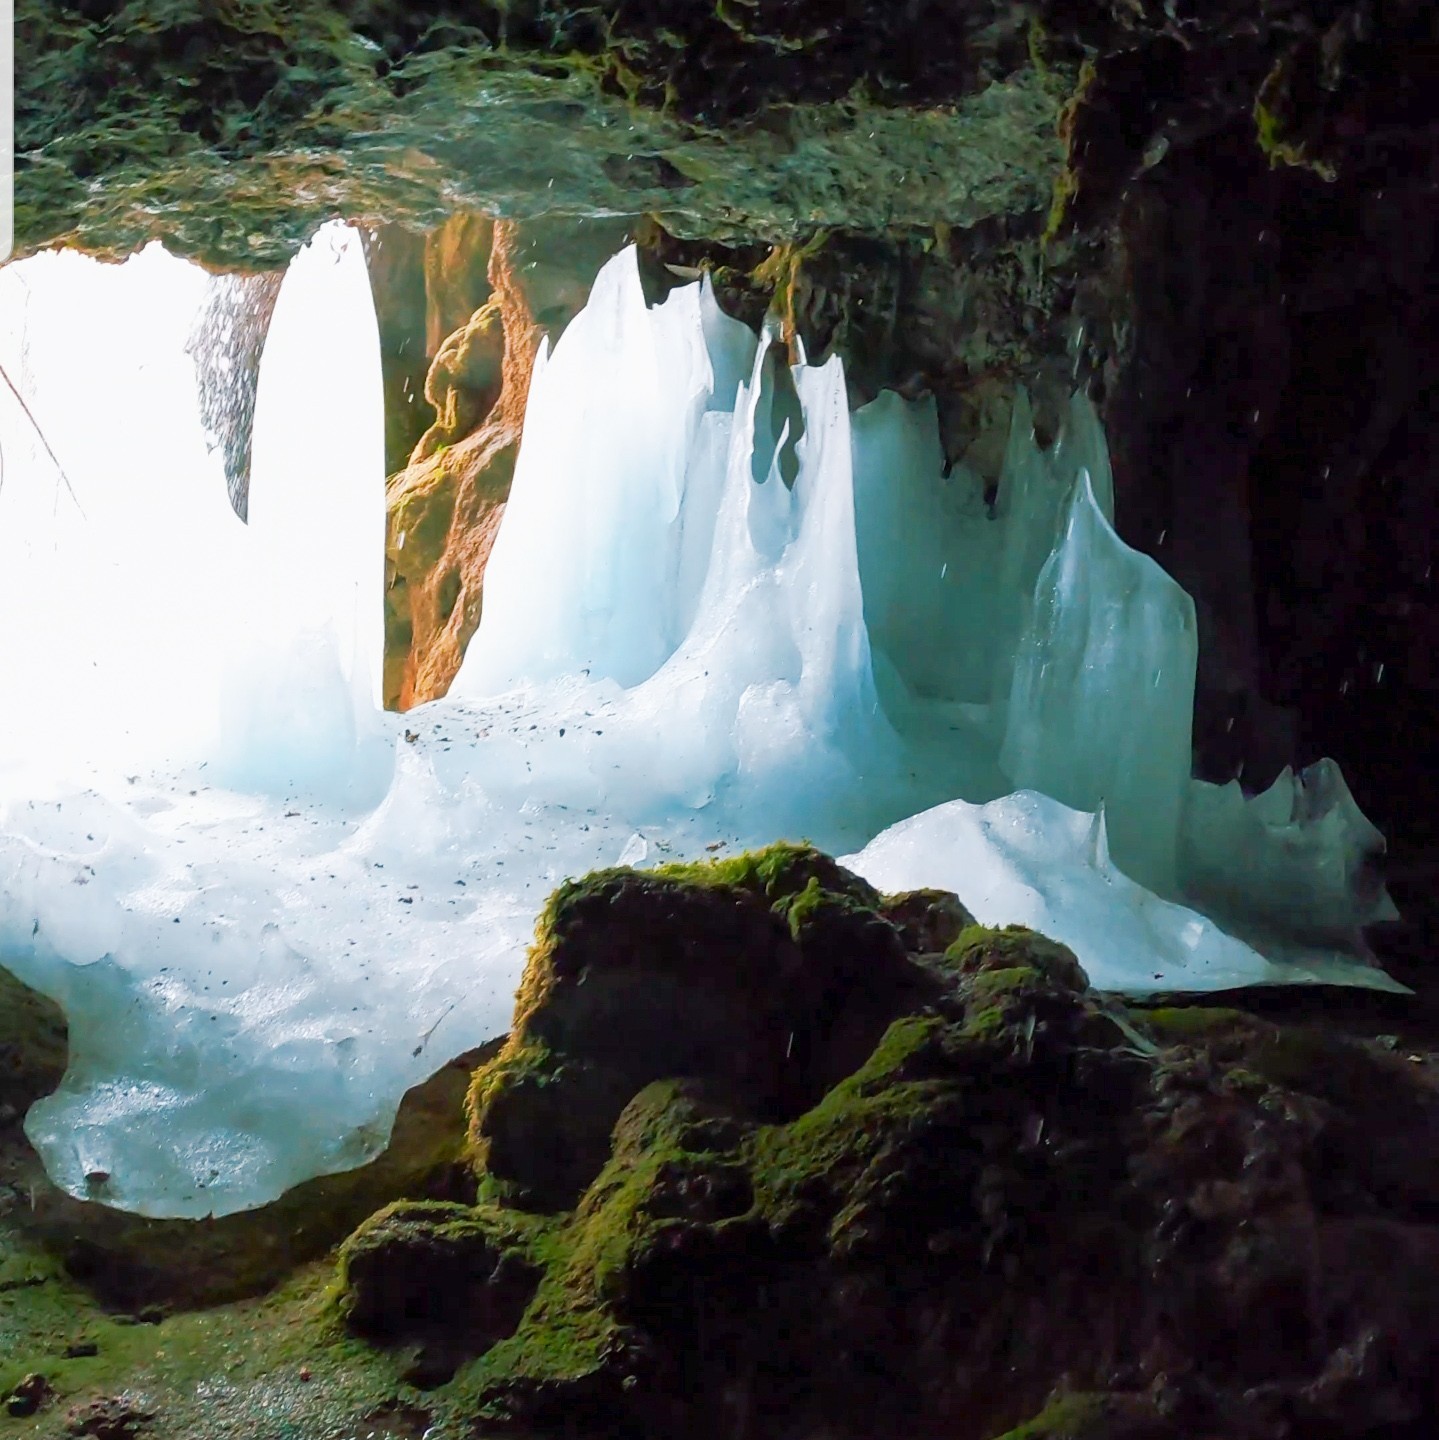 Mağarada buz dikitler hayran bıraktı #kahramanmaras